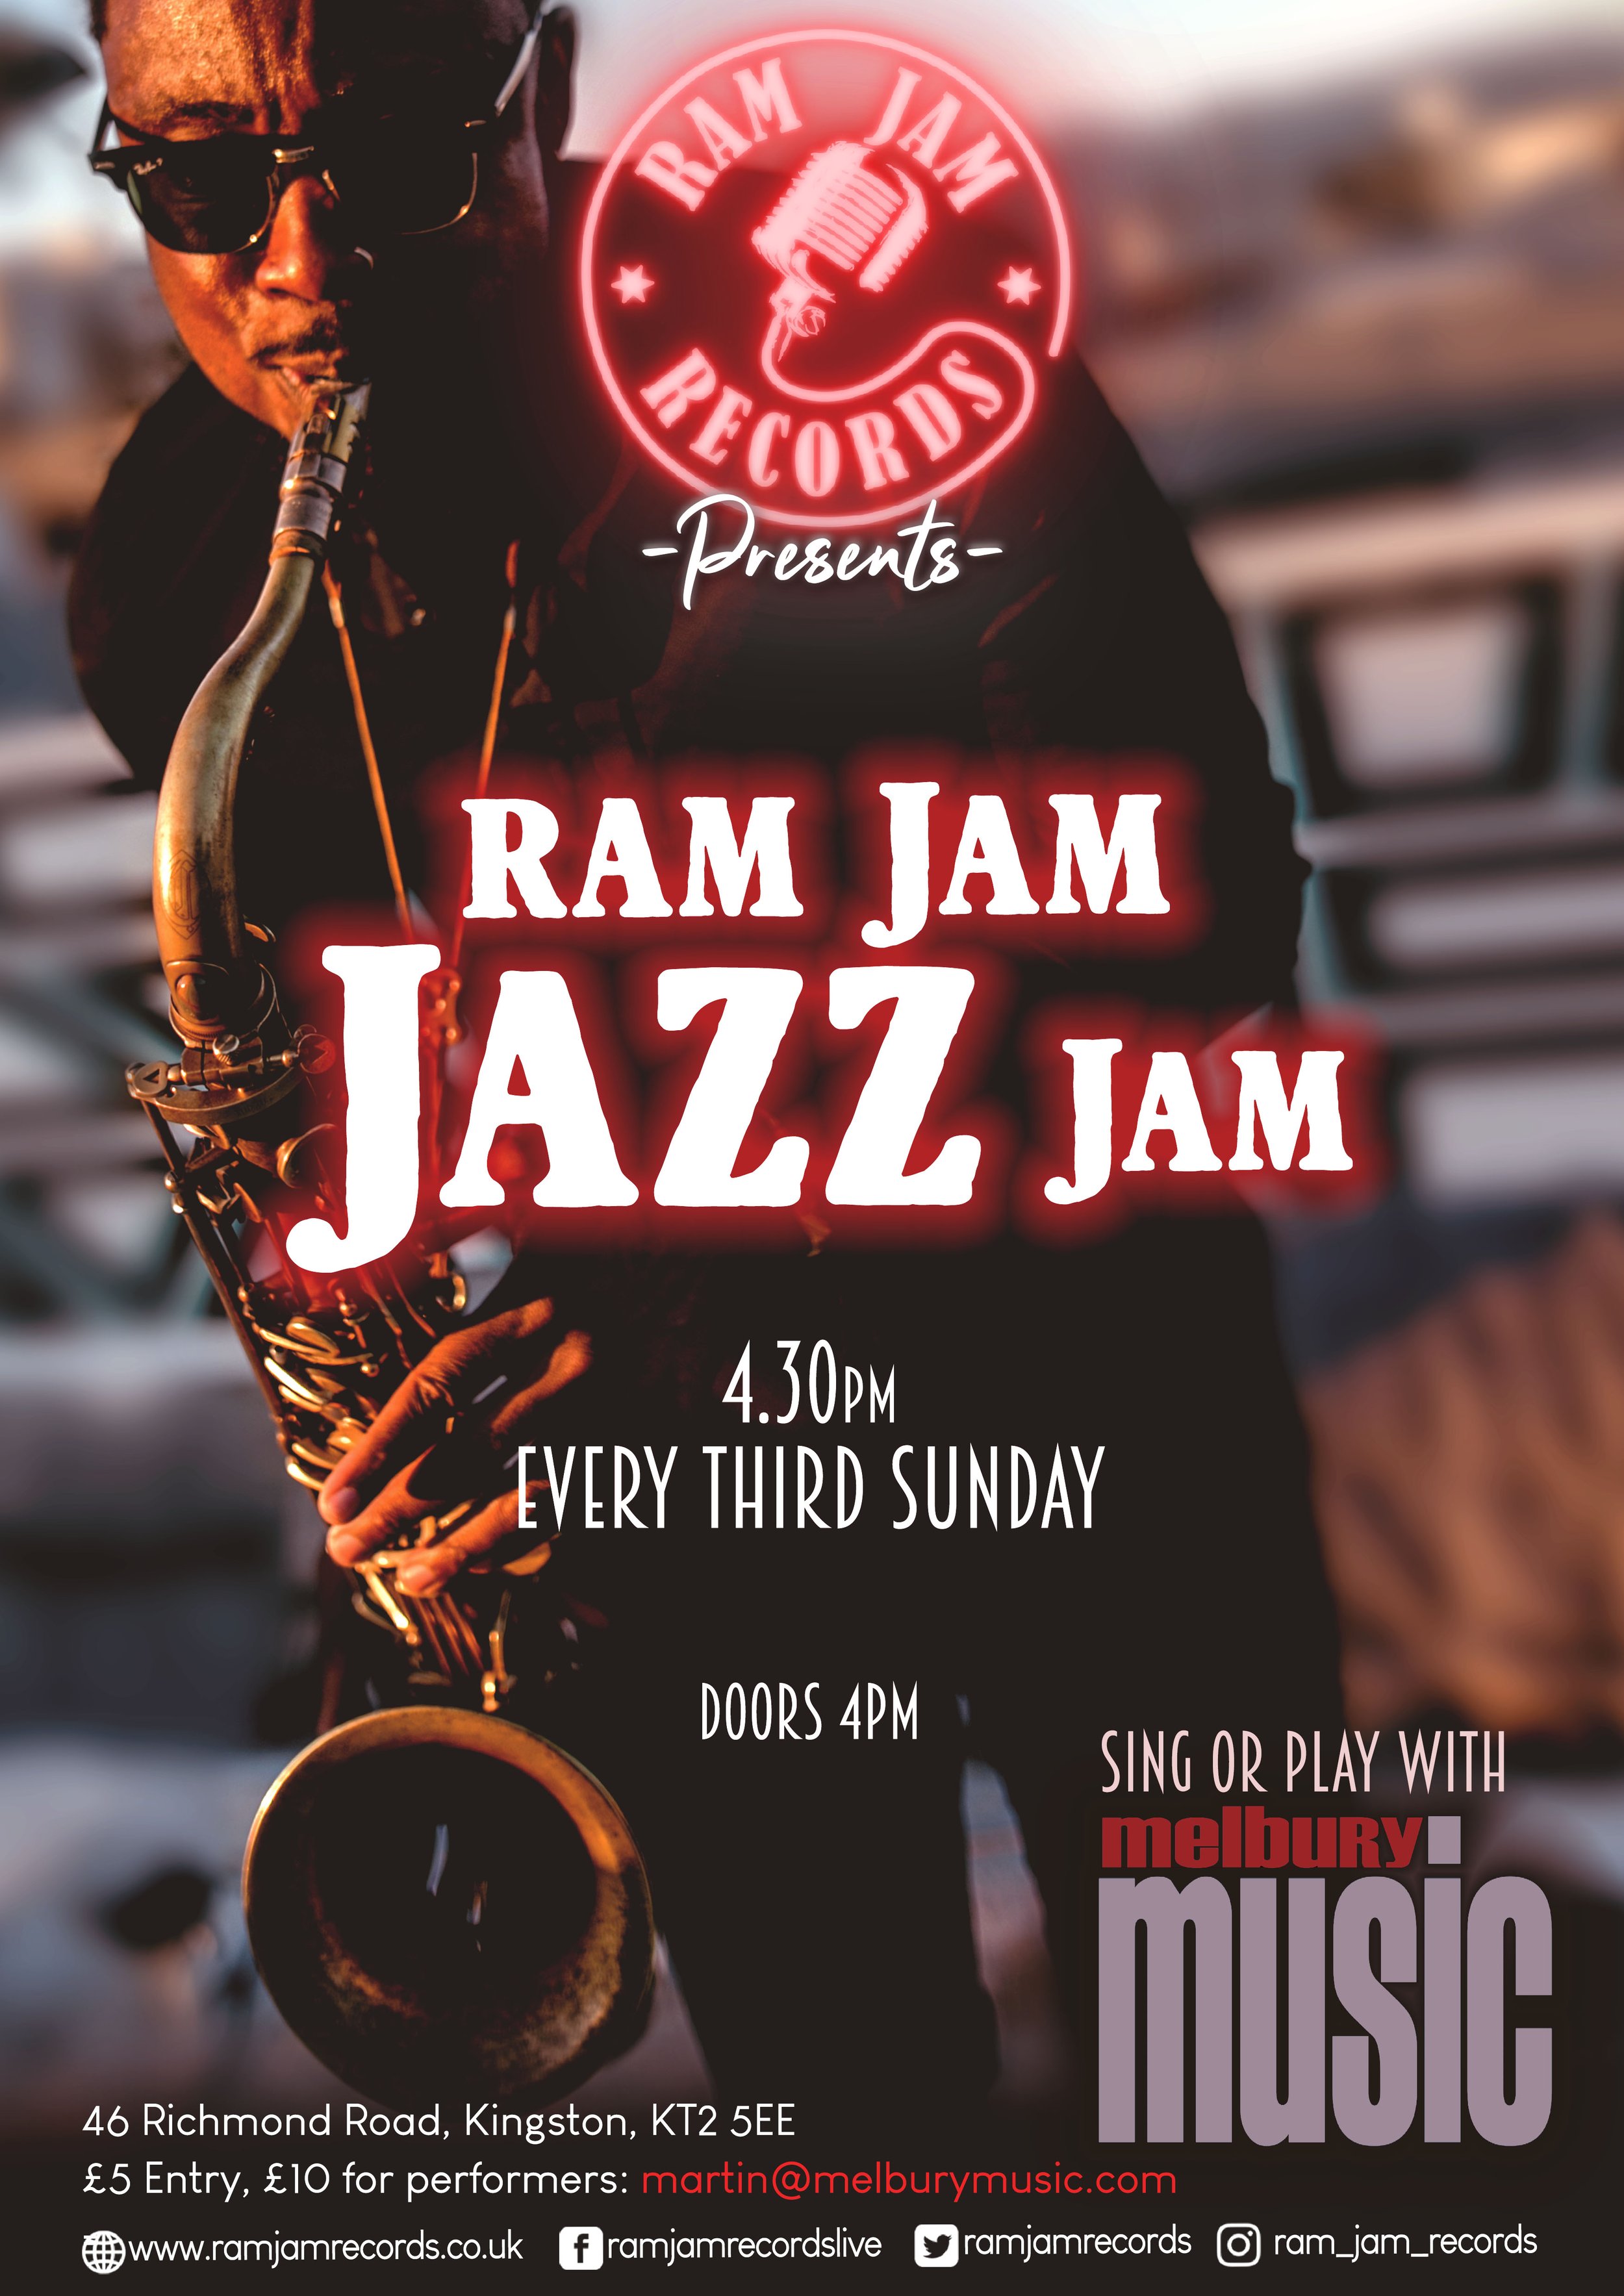 Ram Jam Jazz Jam A3 copy 23.jpg